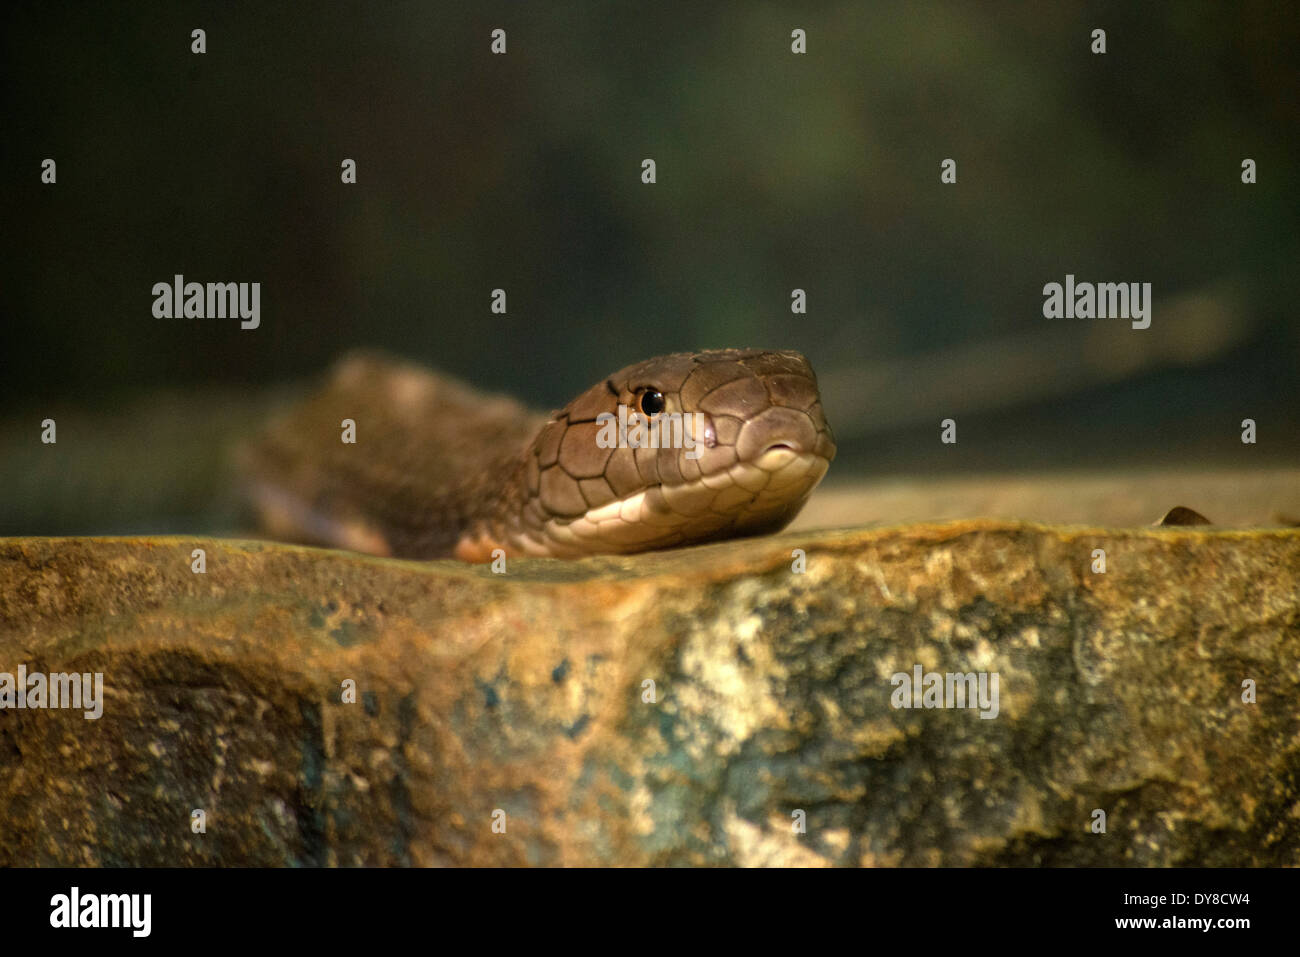 king cobra, ophiophagus hannah, snake, head, animal Stock Photo